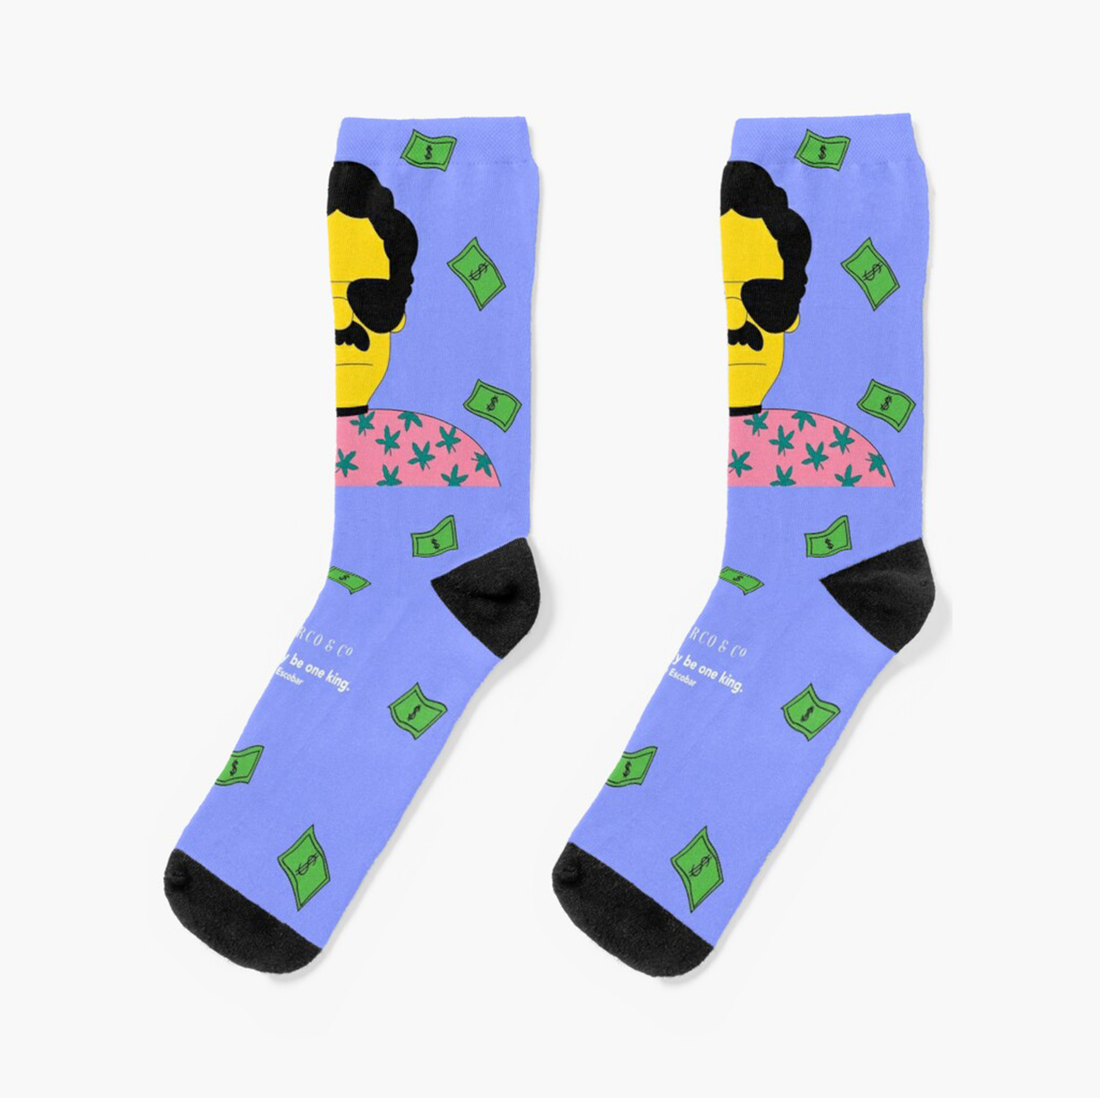 Escobar nft Series Socks